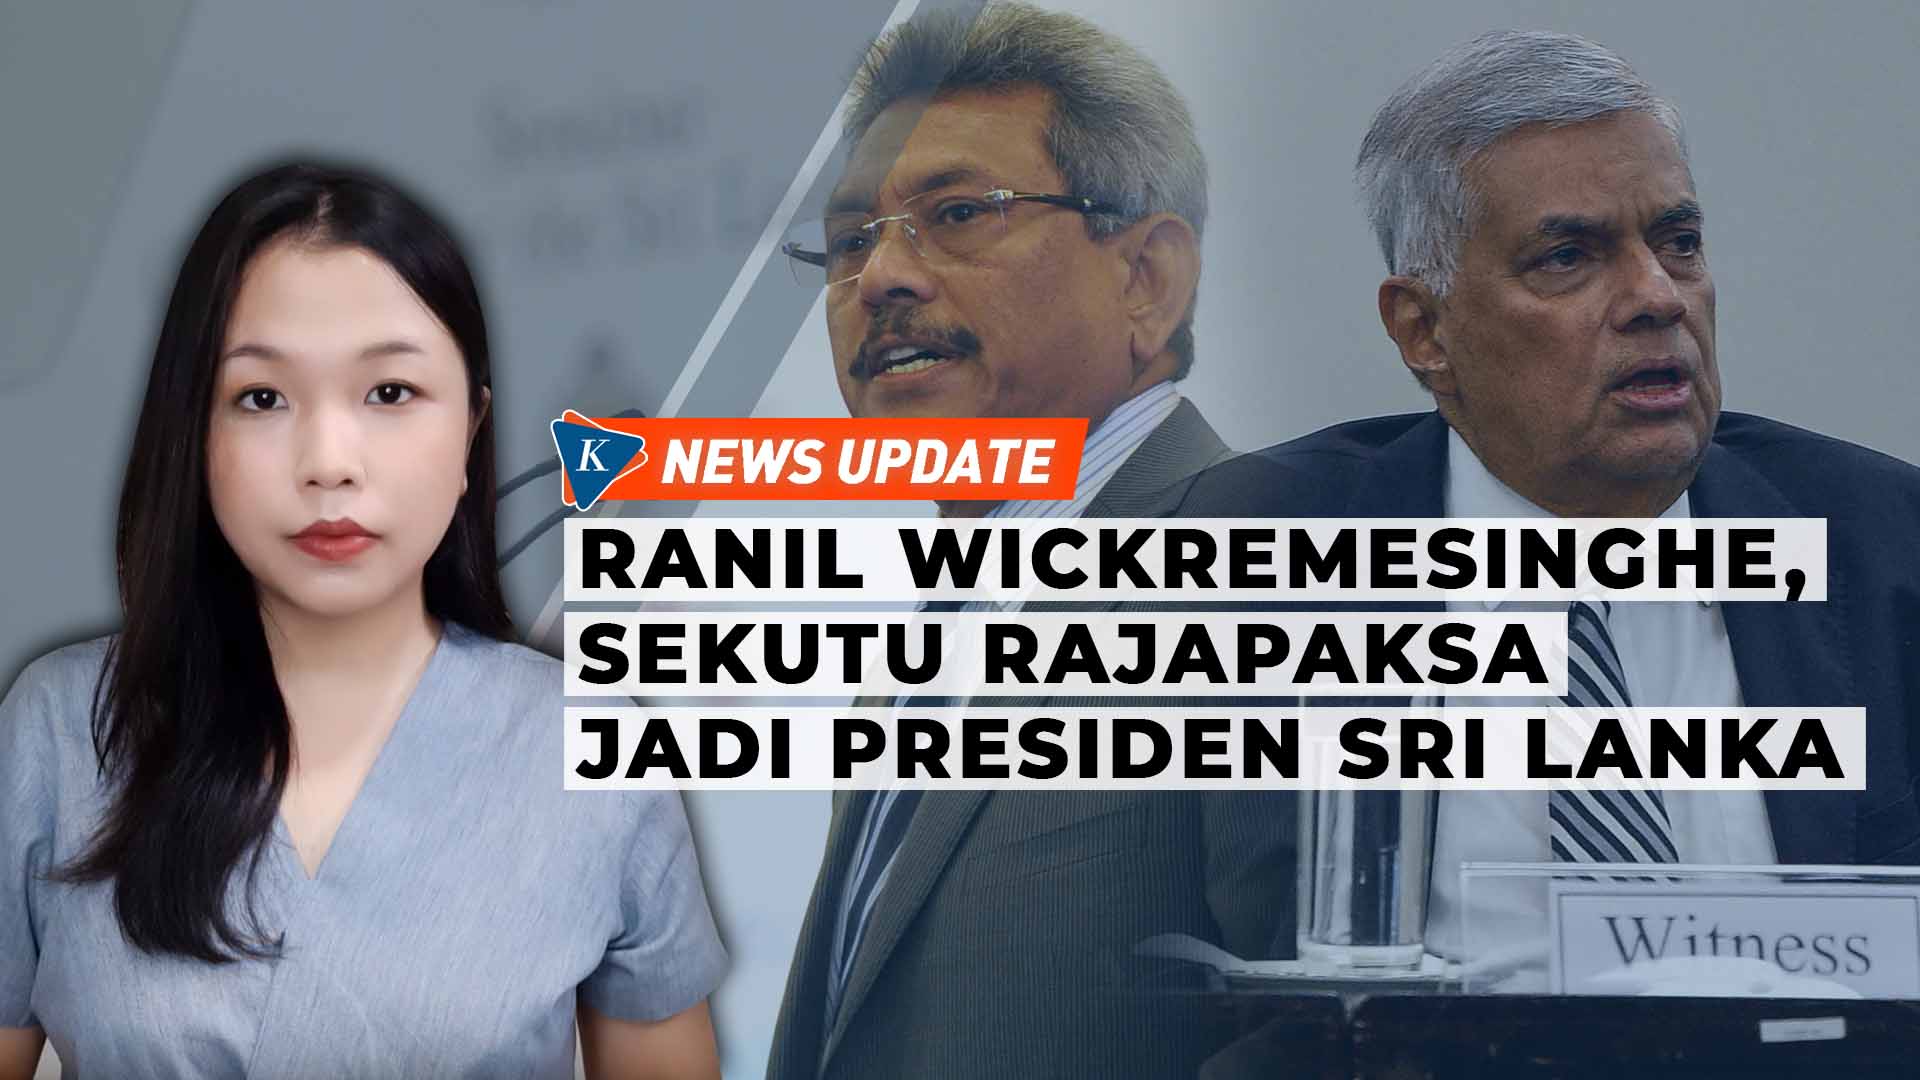 Ranil Wickremesinghe, Akui Menentang tapi Menang Pilpres Berkat Dukungan Partai Rajapaksa